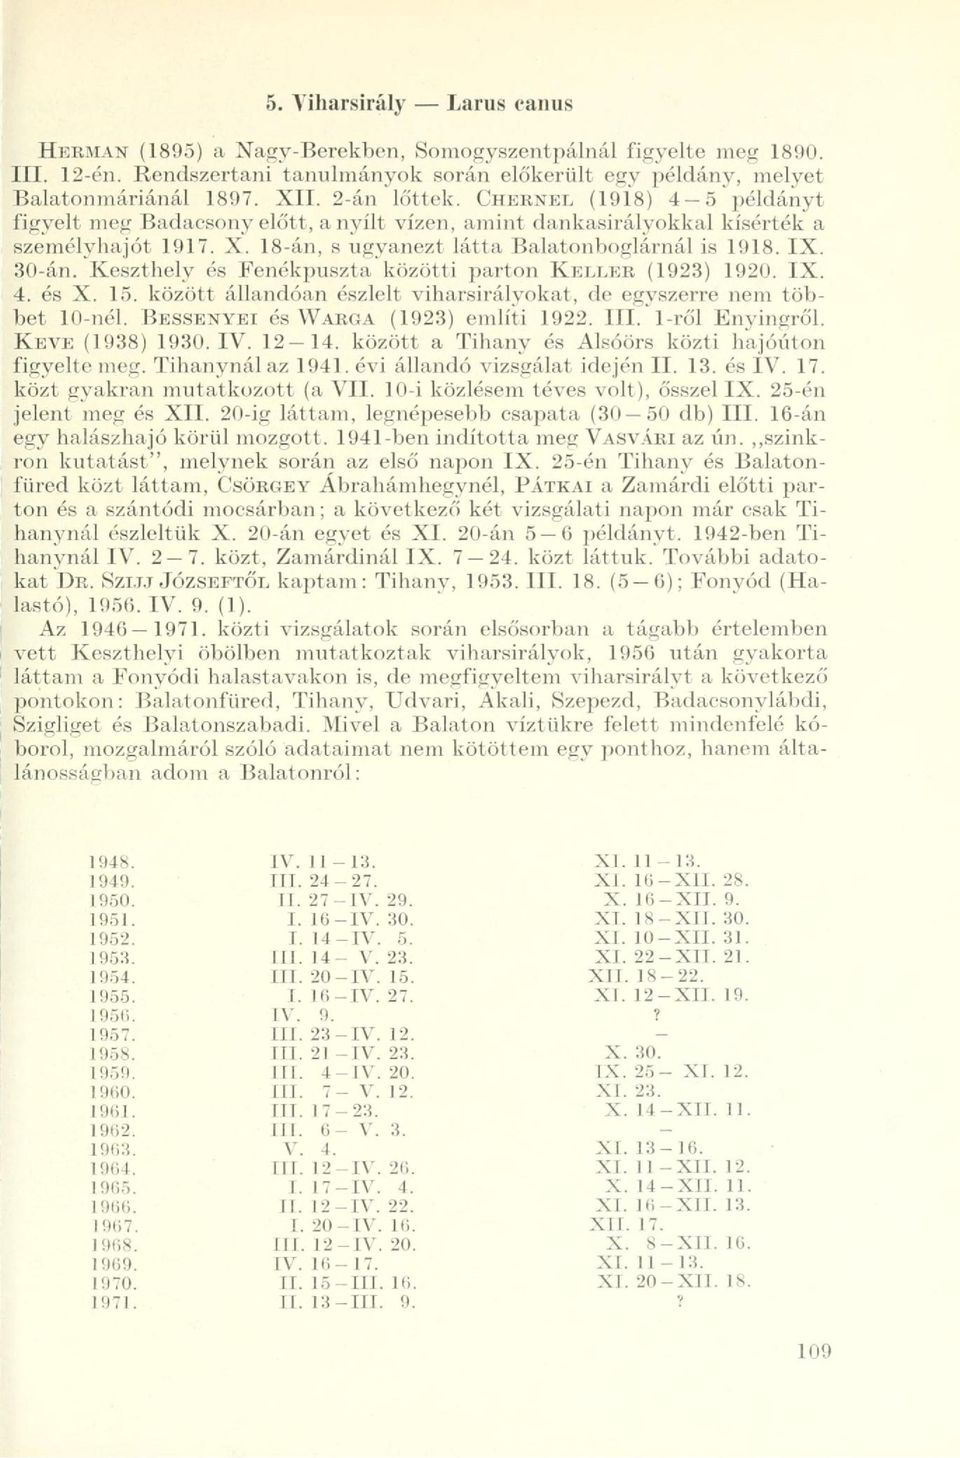 30-án.'Keszthely és Fenékpuszta'közötti parton KELLER (1923) 1920. IX. 4. és X. 15. között állandóan észlelt viharsirályokat, de egyszerre nem többet 10-nél. BESSENYEI és WARGA (1923) említi 1922.